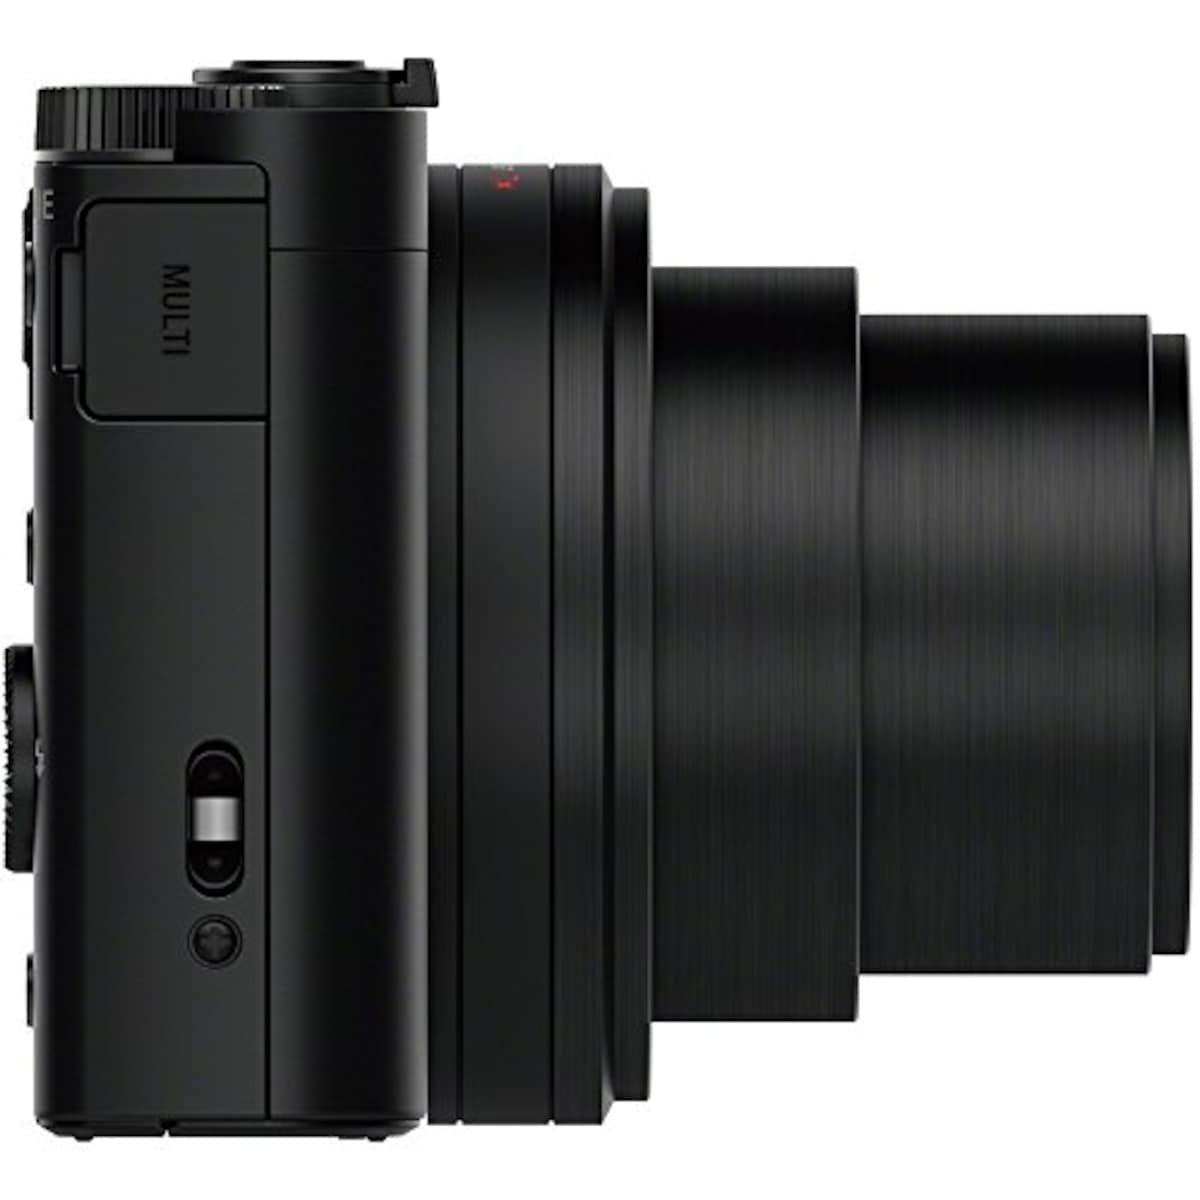  【WX500 と ジャケットケース セット】 大切なカメラをキズや汚れからガードしたい方に。DSC-WX500 ブラック + LCJ-HWA画像2 